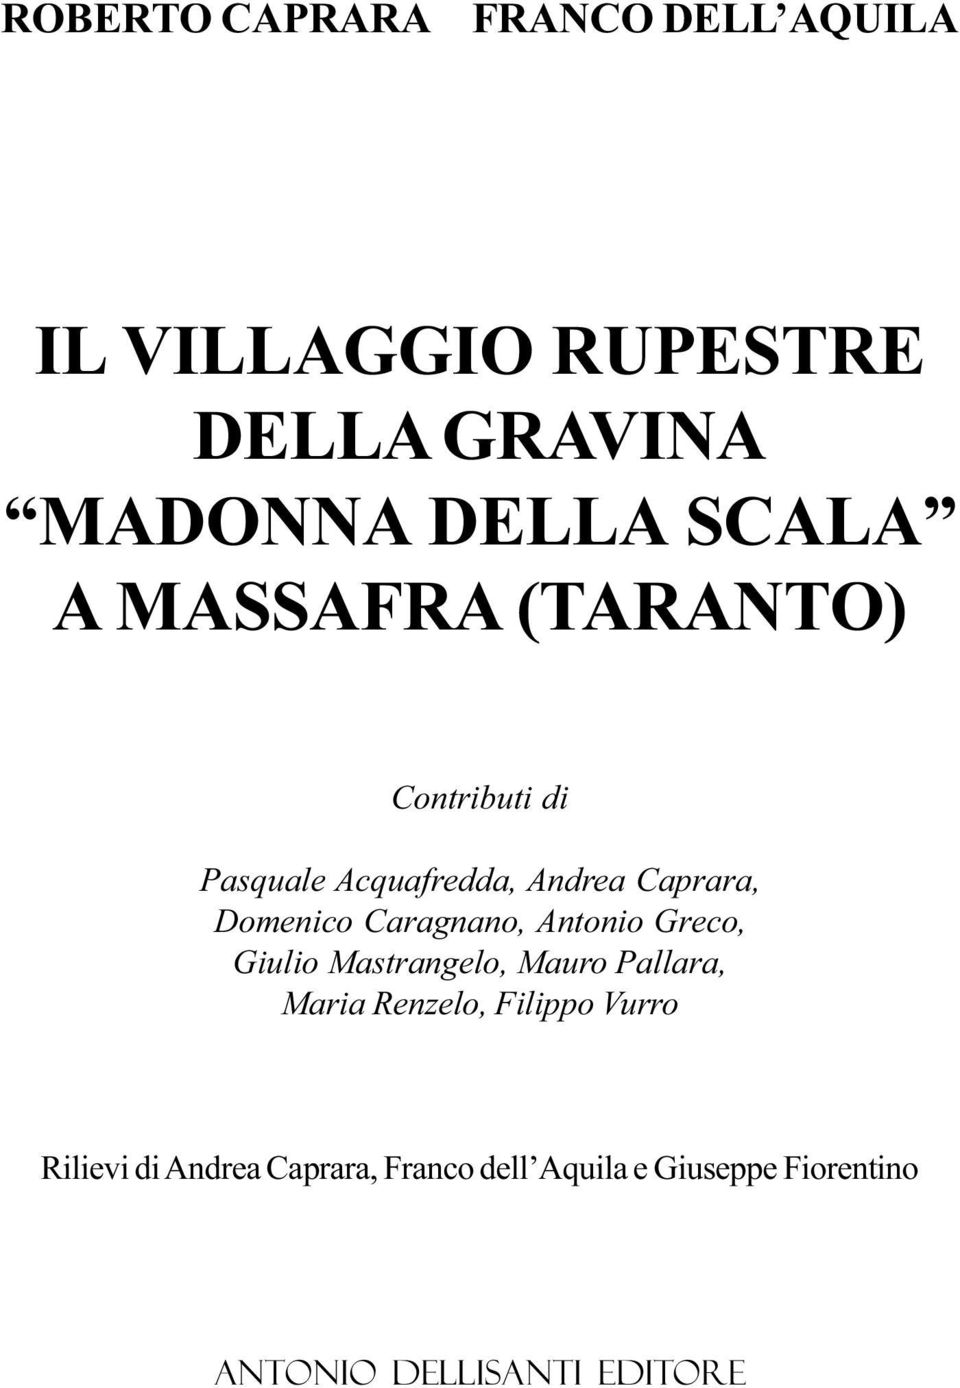 Caragnano, Antonio Greco, Giulio Mastrangelo, Mauro Pallara, Maria Renzelo, Filippo Vurro